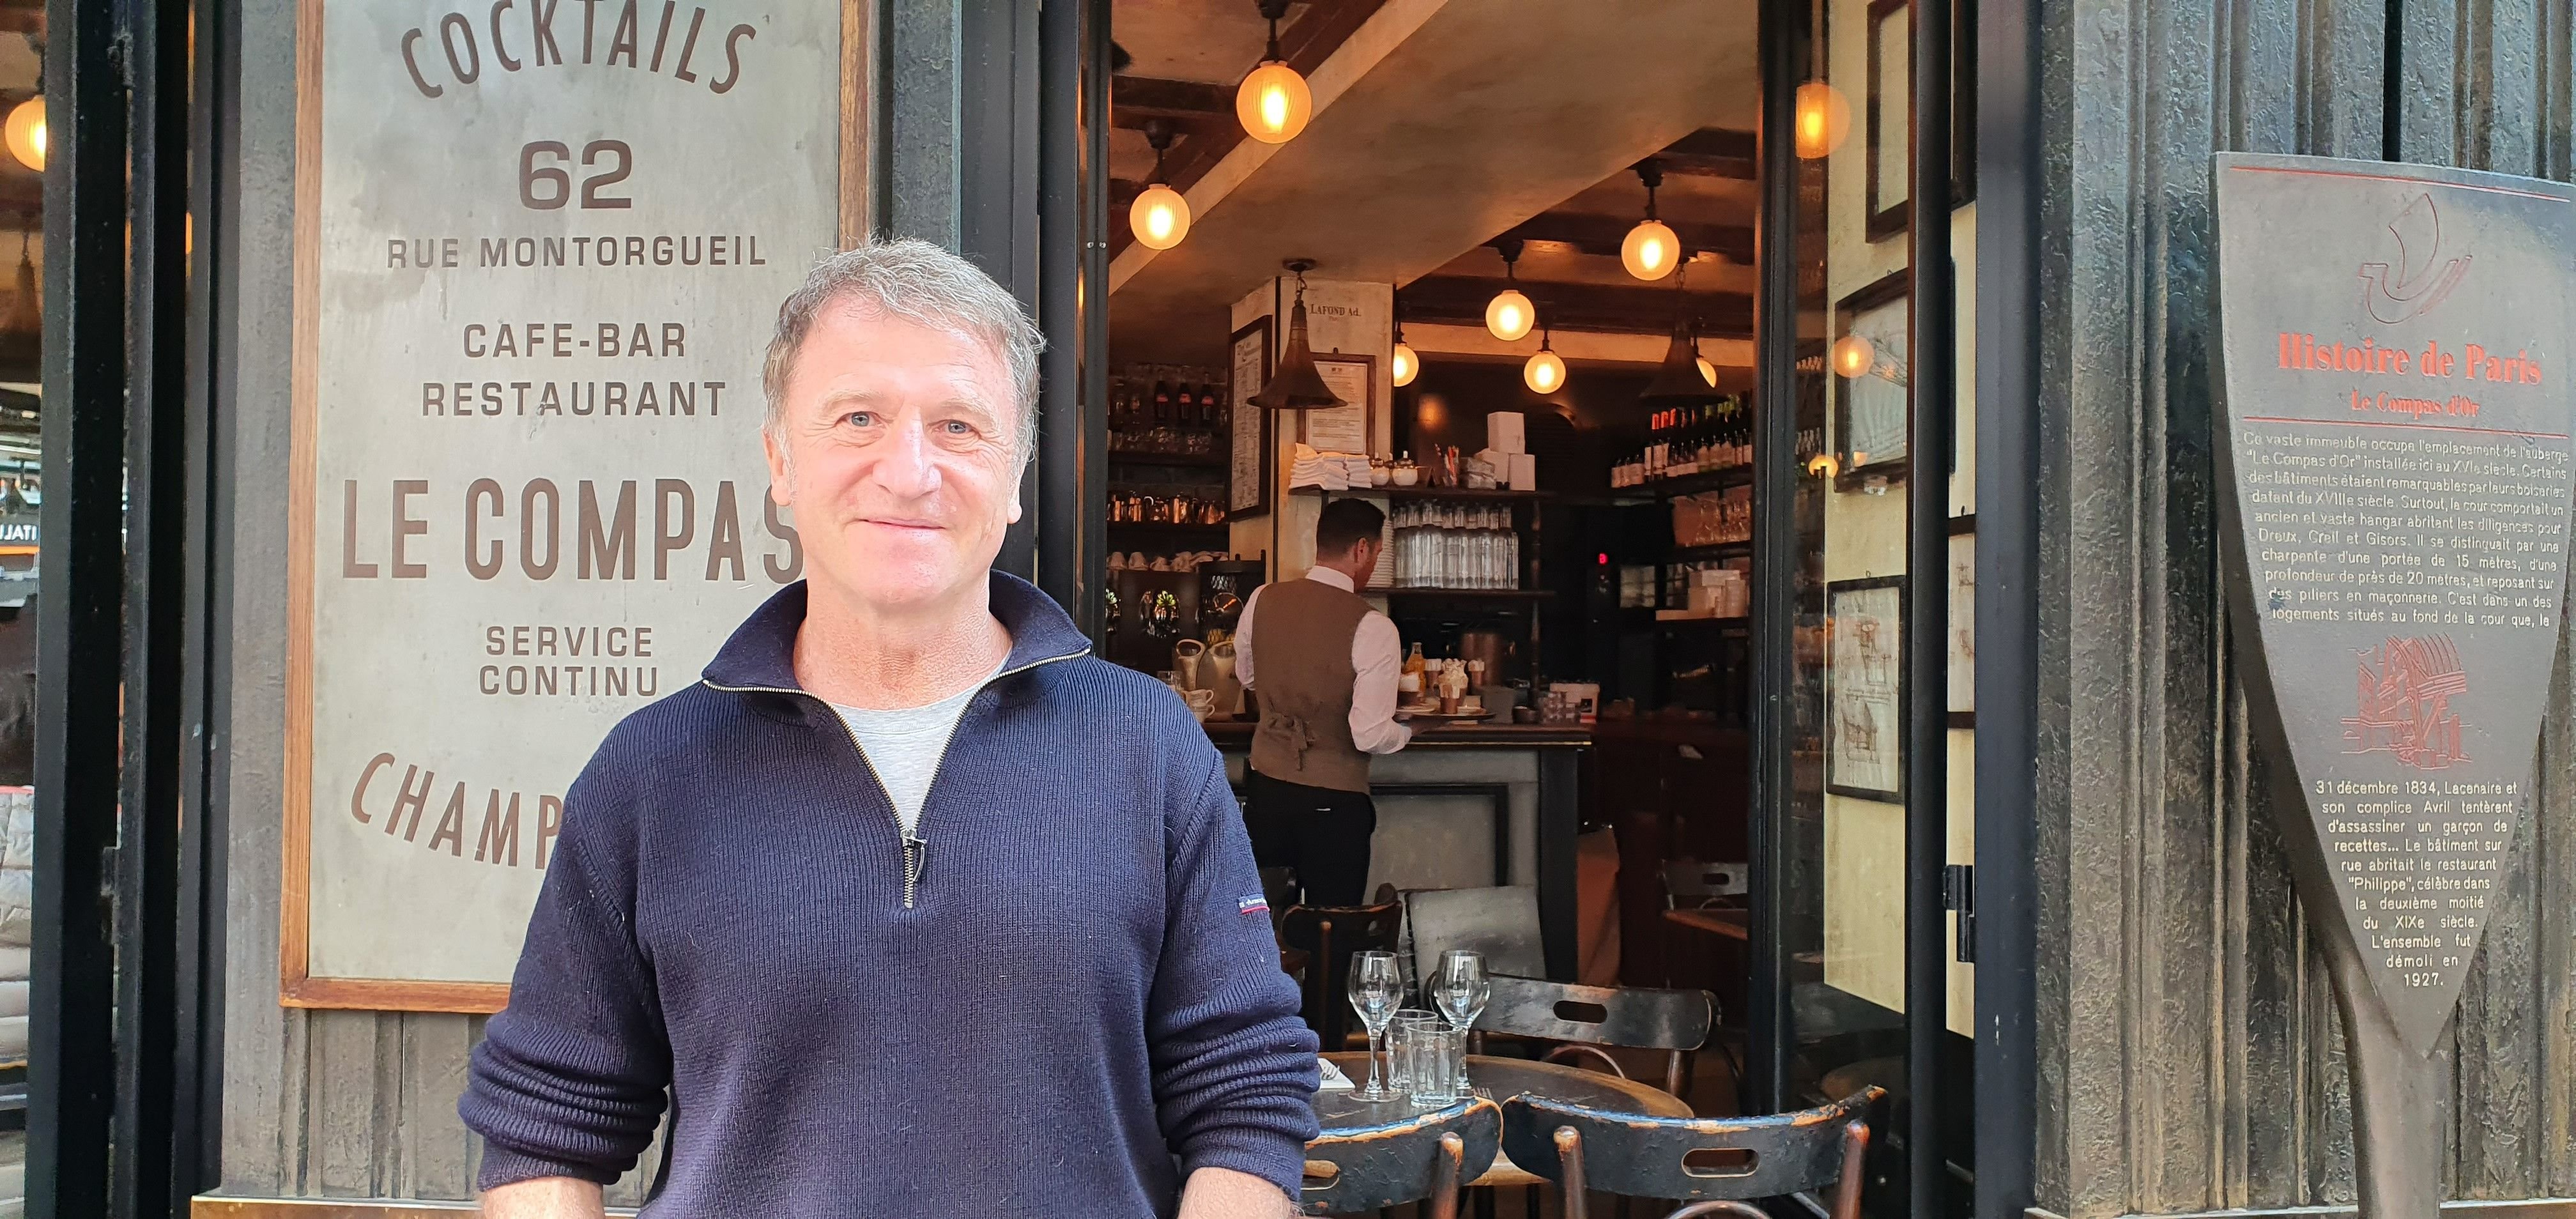 Paris, le 19 avril. Alain Cojean, 60 ans, a fondé son entreprise de restauration en 2001 avant de la céder dix-huit ans plus tard. Il raconte son parcours dans un livre. LP/A.-S.D.